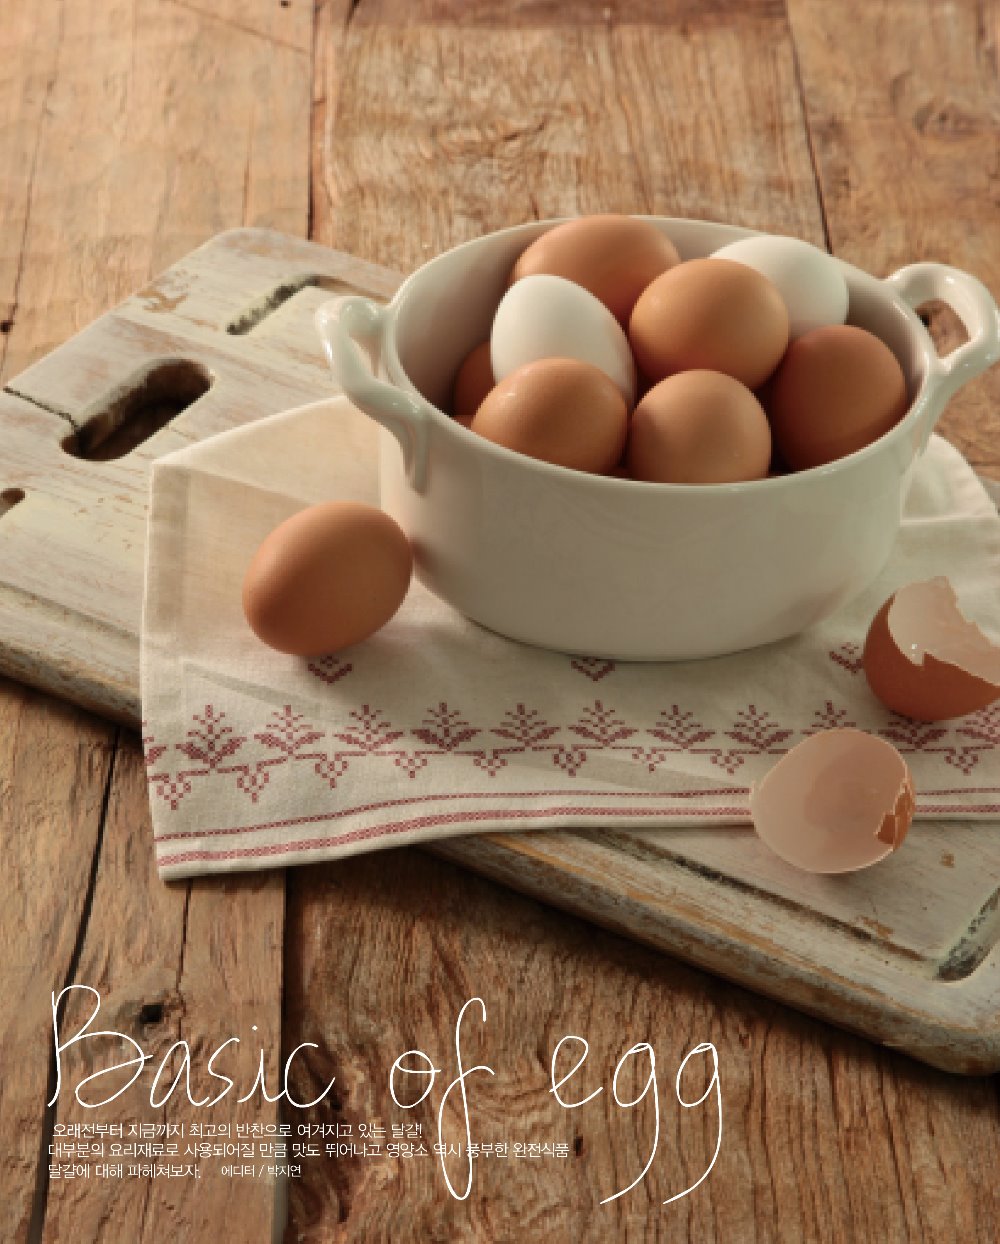 달걀의 모든 것! 계란의 정보, 영양, 성분, 좋은 계란 고르는법